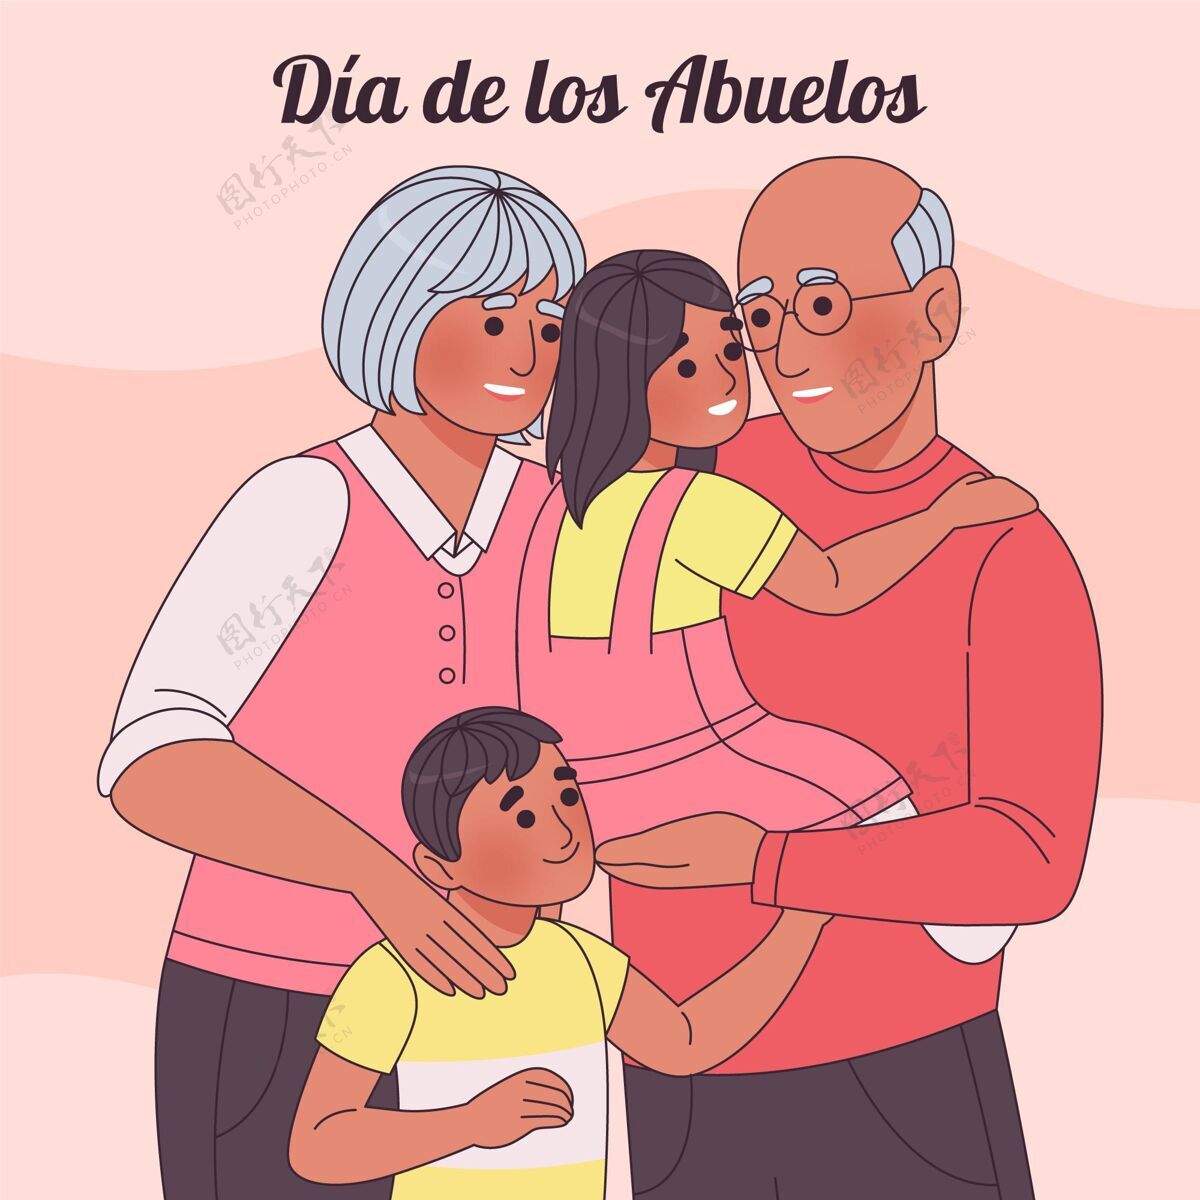 祖父母迪亚德洛斯阿布埃洛斯庆典插图节日祖母平面设计